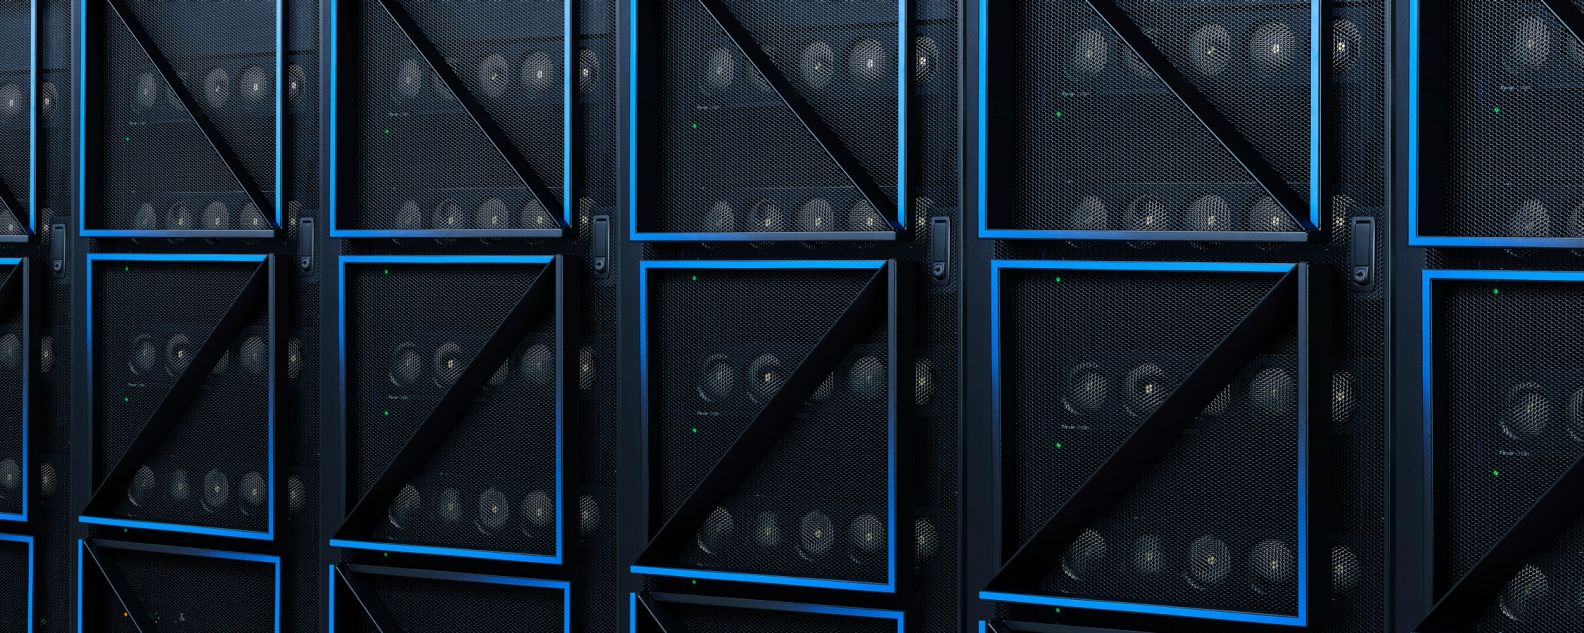 Deretan rak server komputer di pusat data, dilengkapi desain pintu IBM Power10